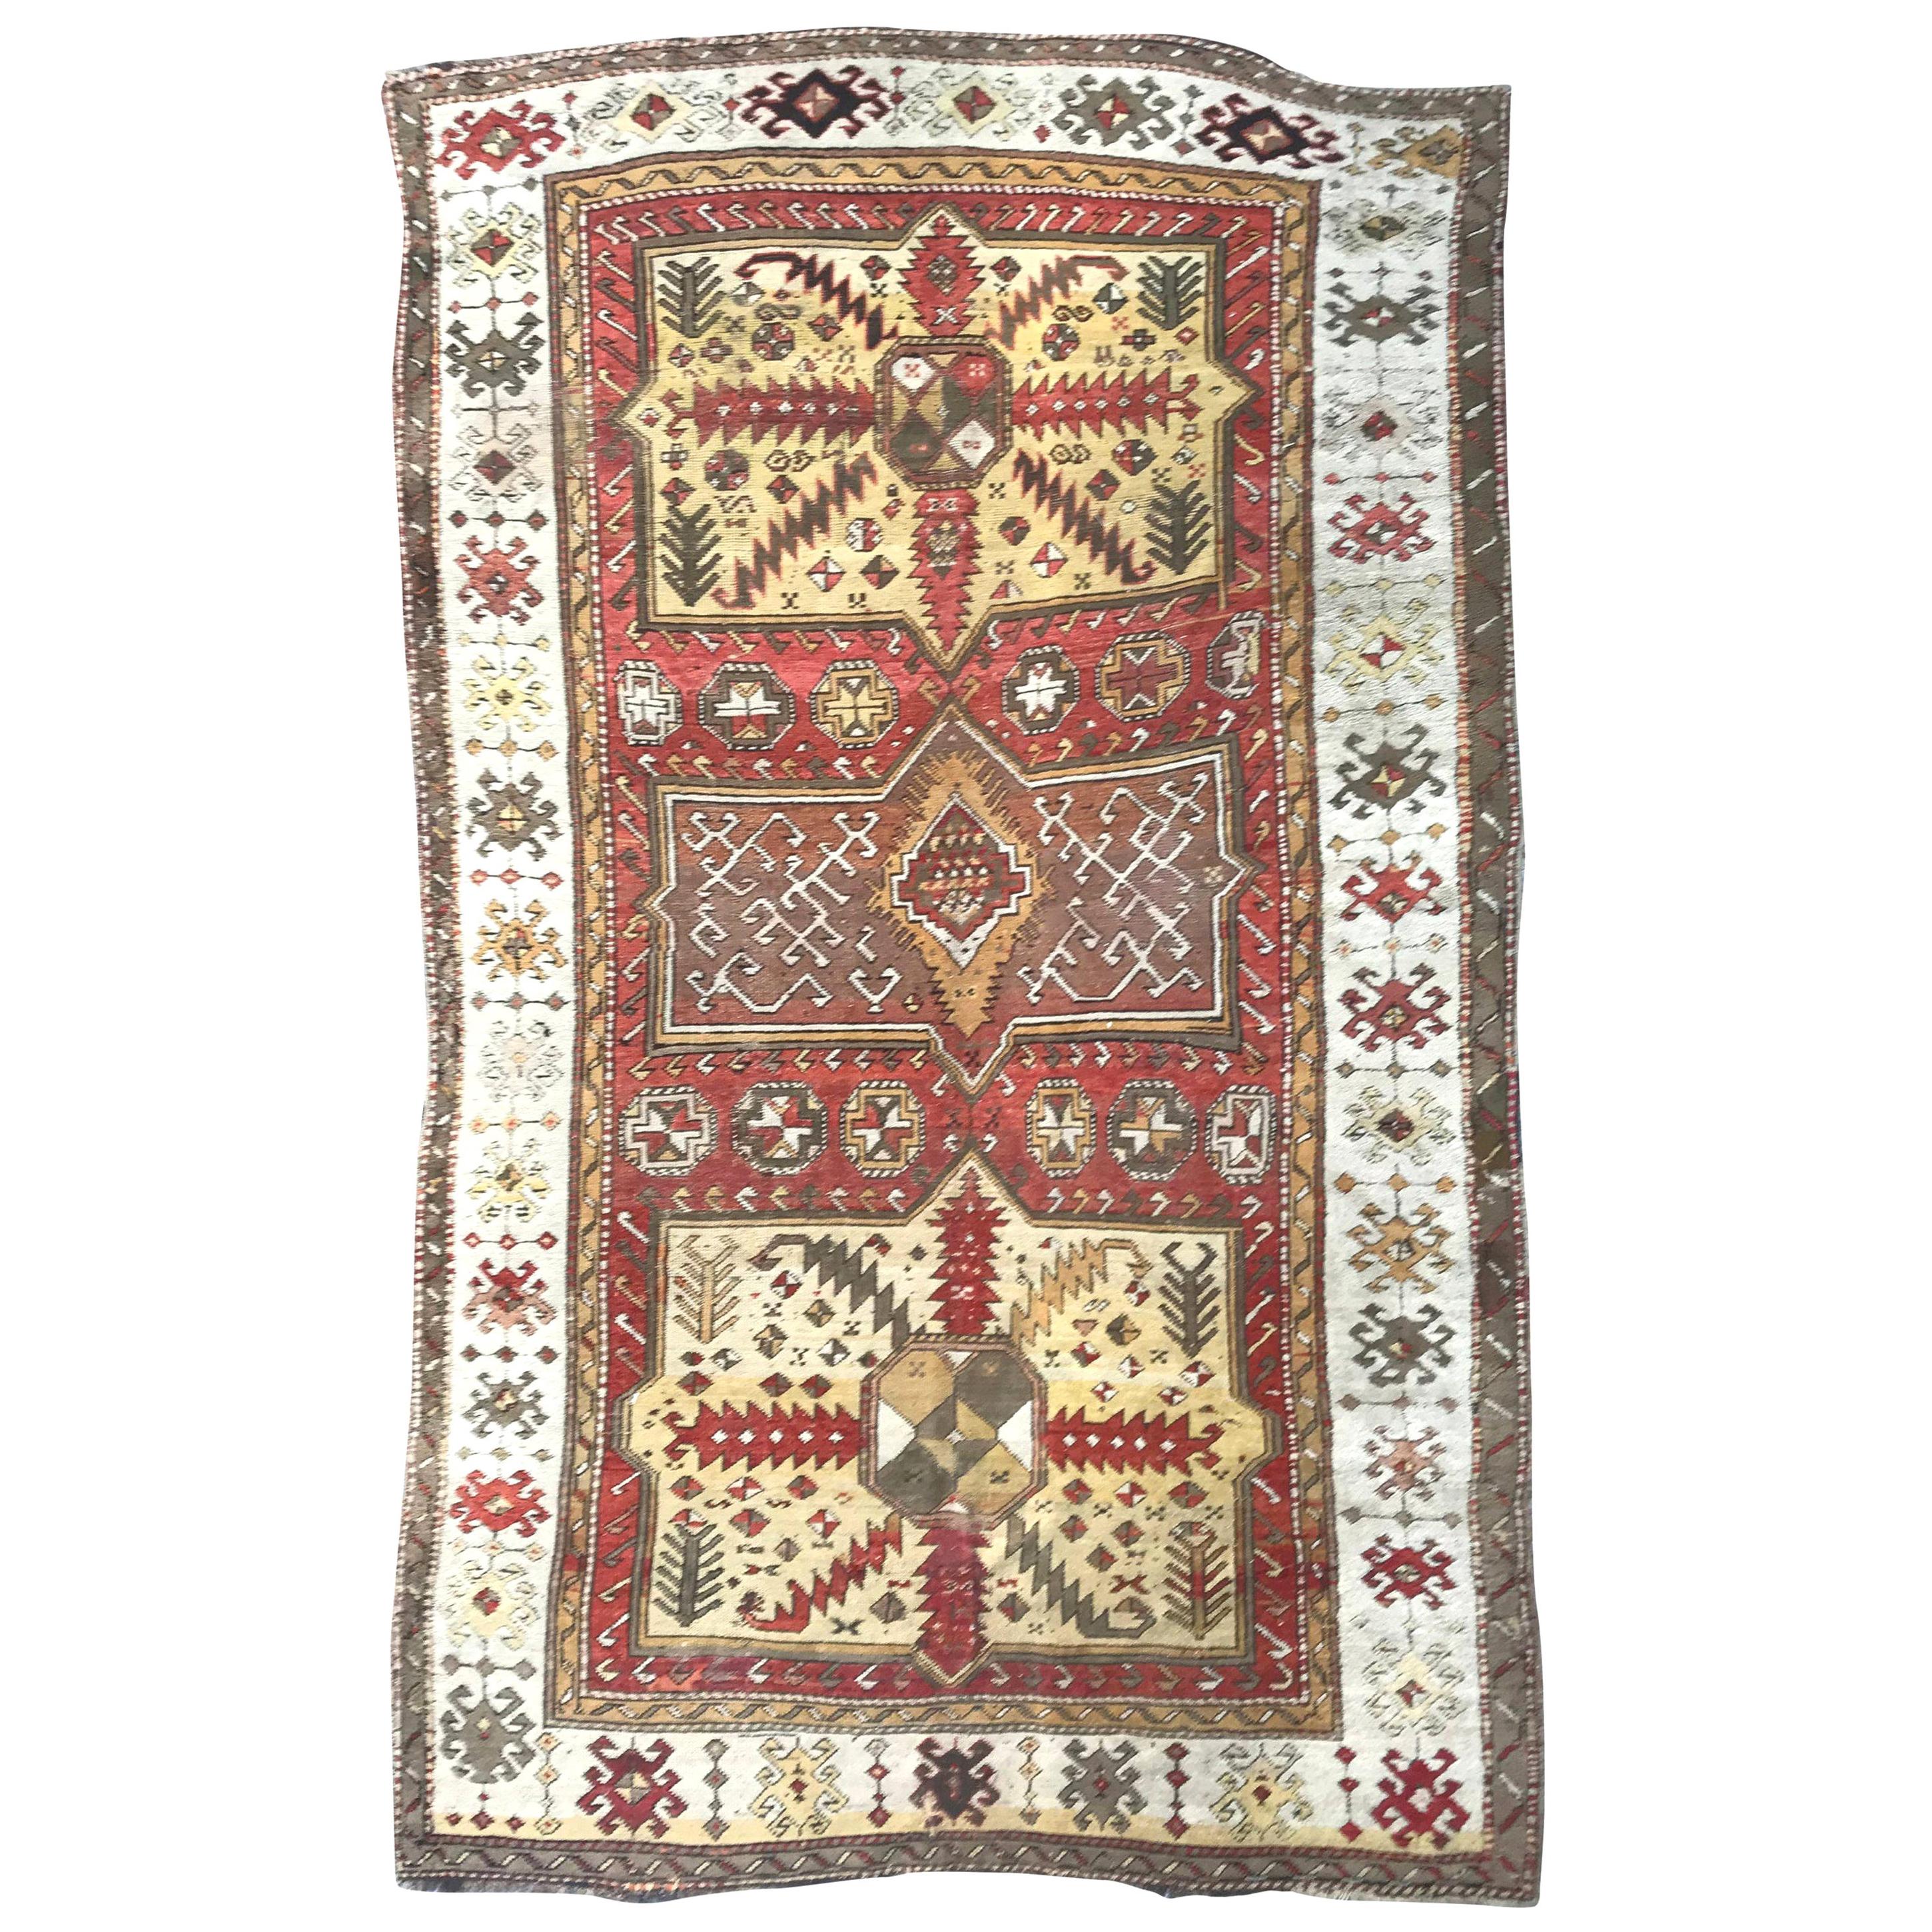 Antiker türkischer Teppich mit kaukasischem Design, Wunderschön